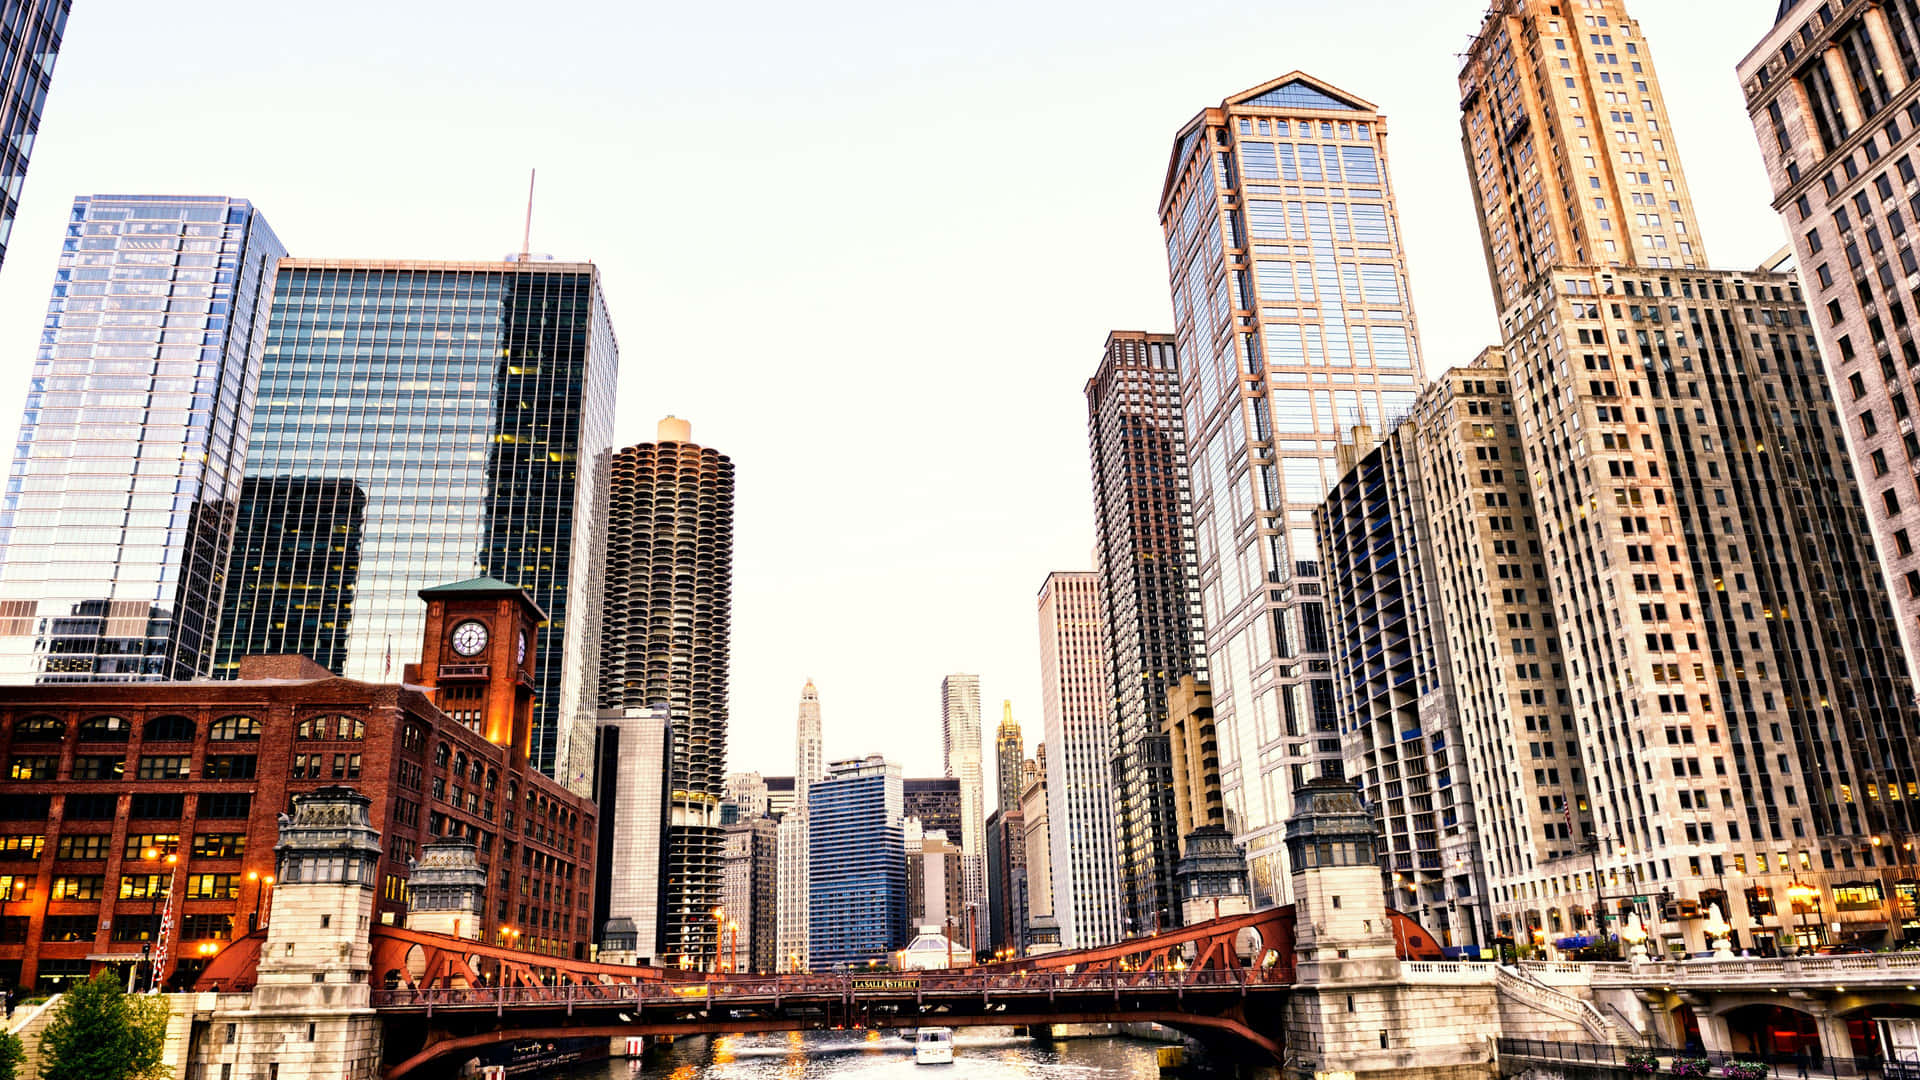 Nyd den imponerende smukhed af Chicagos skyline i utrolig 4K Ultra HD-opløsning. Wallpaper